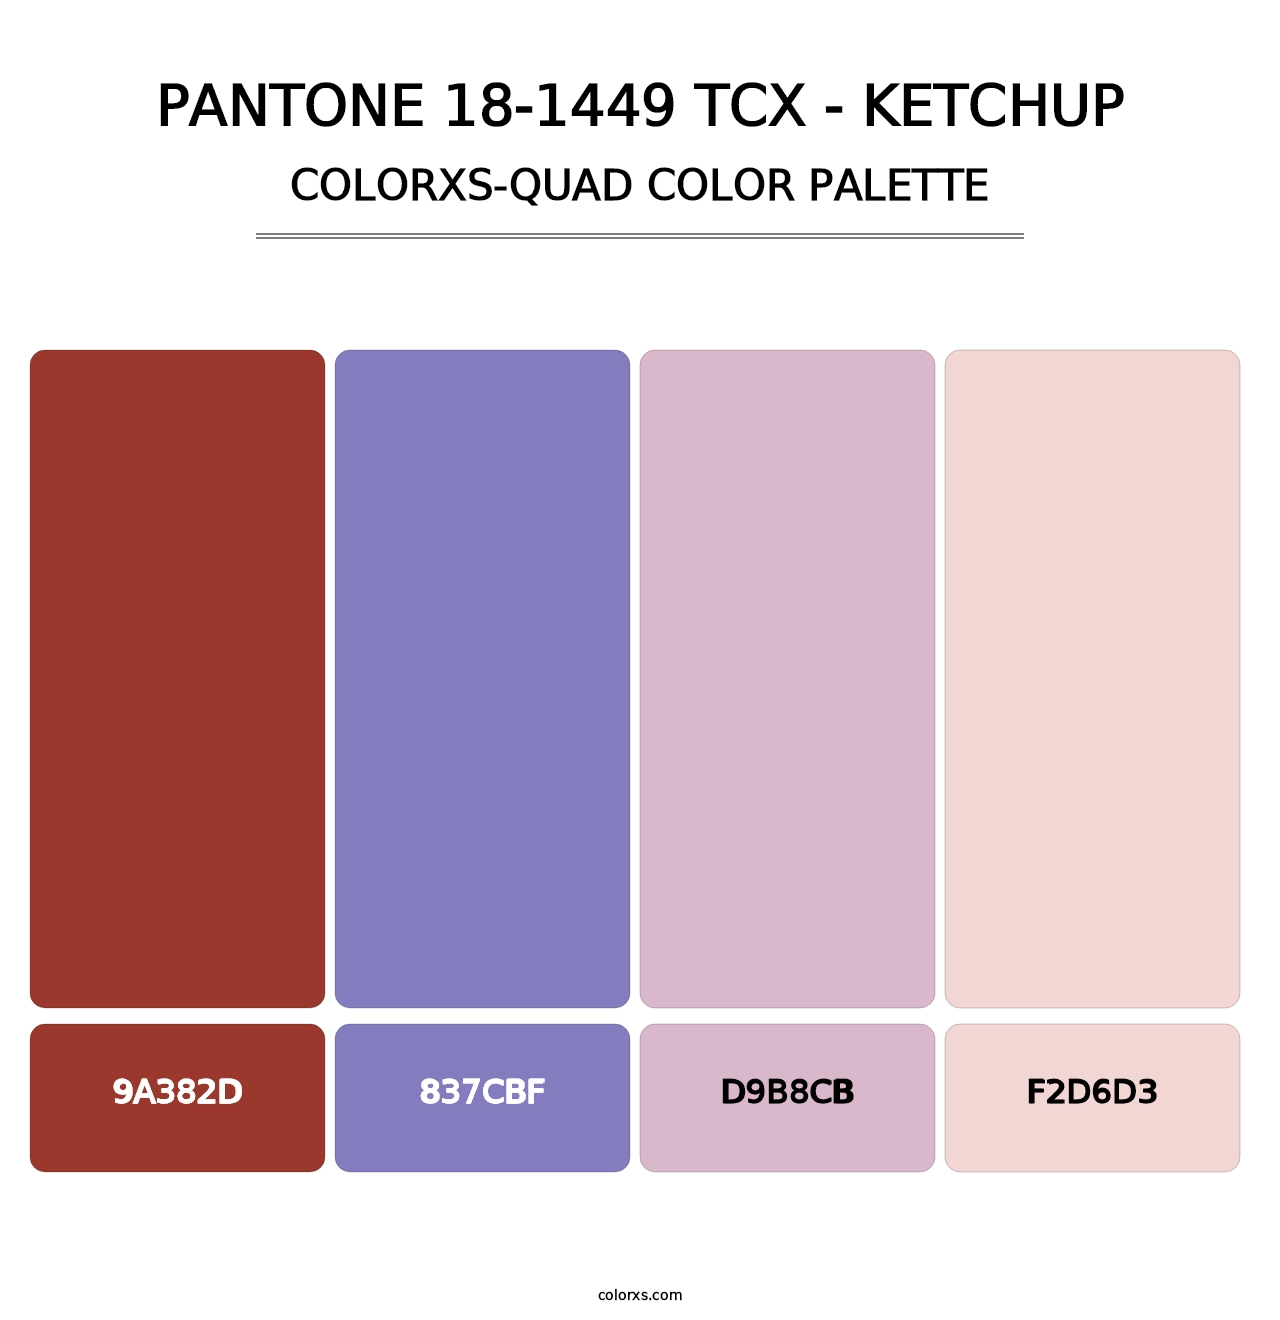 PANTONE 18-1449 TCX - Ketchup - Colorxs Quad Palette